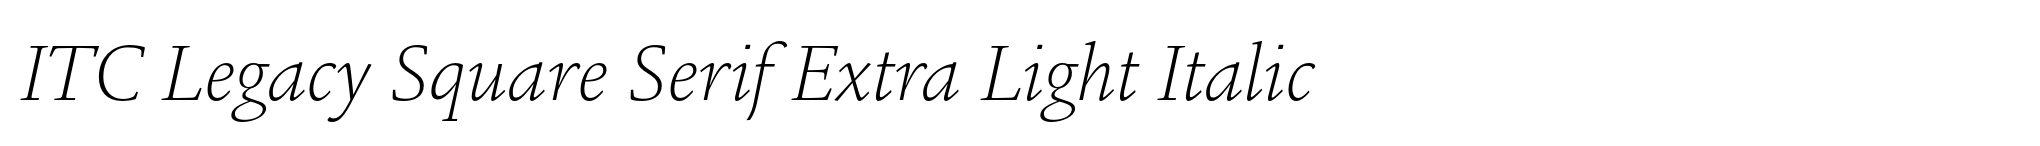 ITC Legacy Square Serif Extra Light Italic image